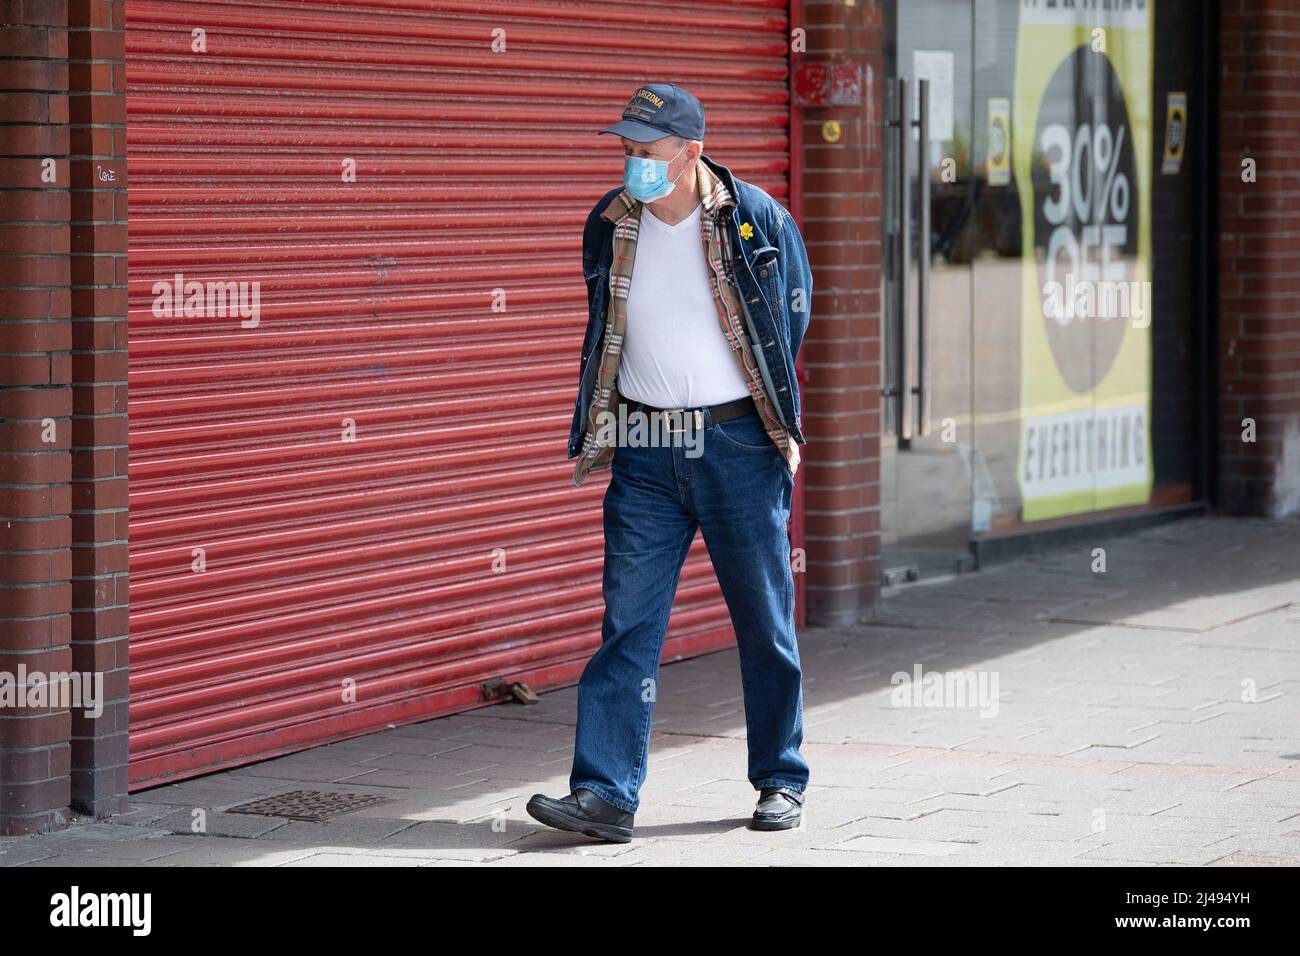 Un hombre que lleva una máscara pasa por un pequeño negocio cerrado durante el período de encierro del coronavirus en Barry, Gales, Reino Unido. Foto de stock